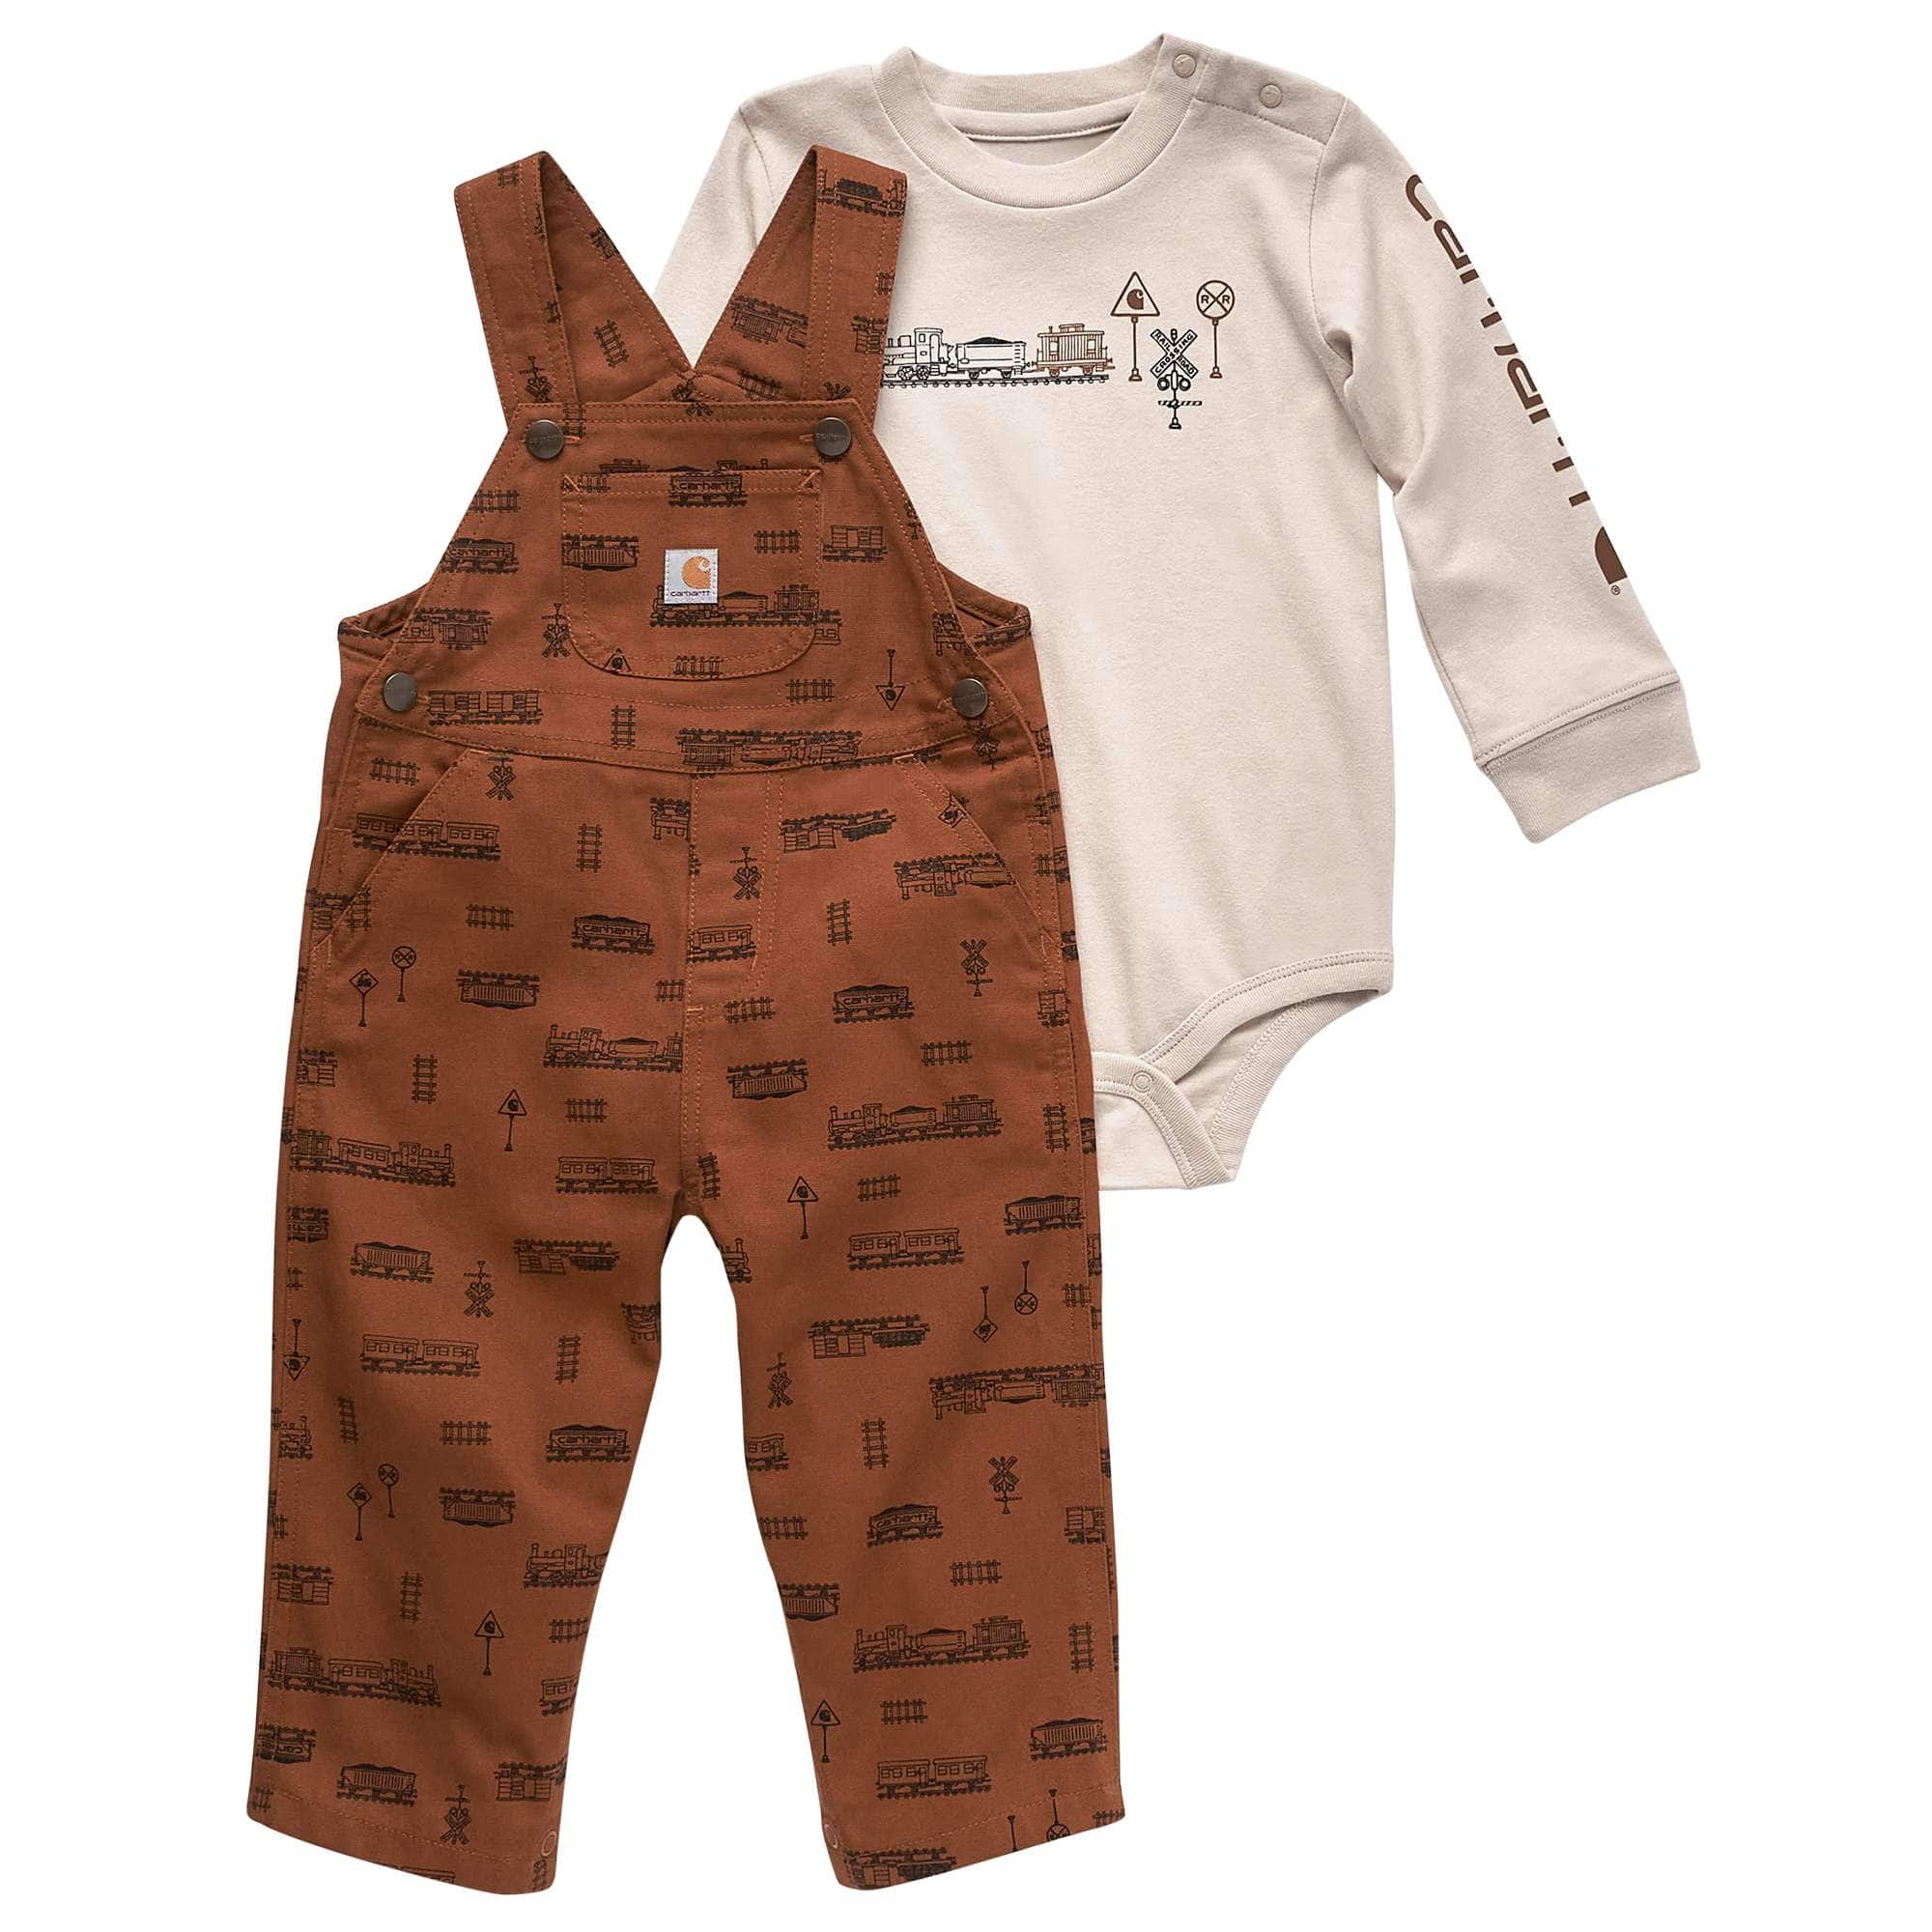 Carhartt babe in 2021  Cute baby boy outfits, Baby boy fashion